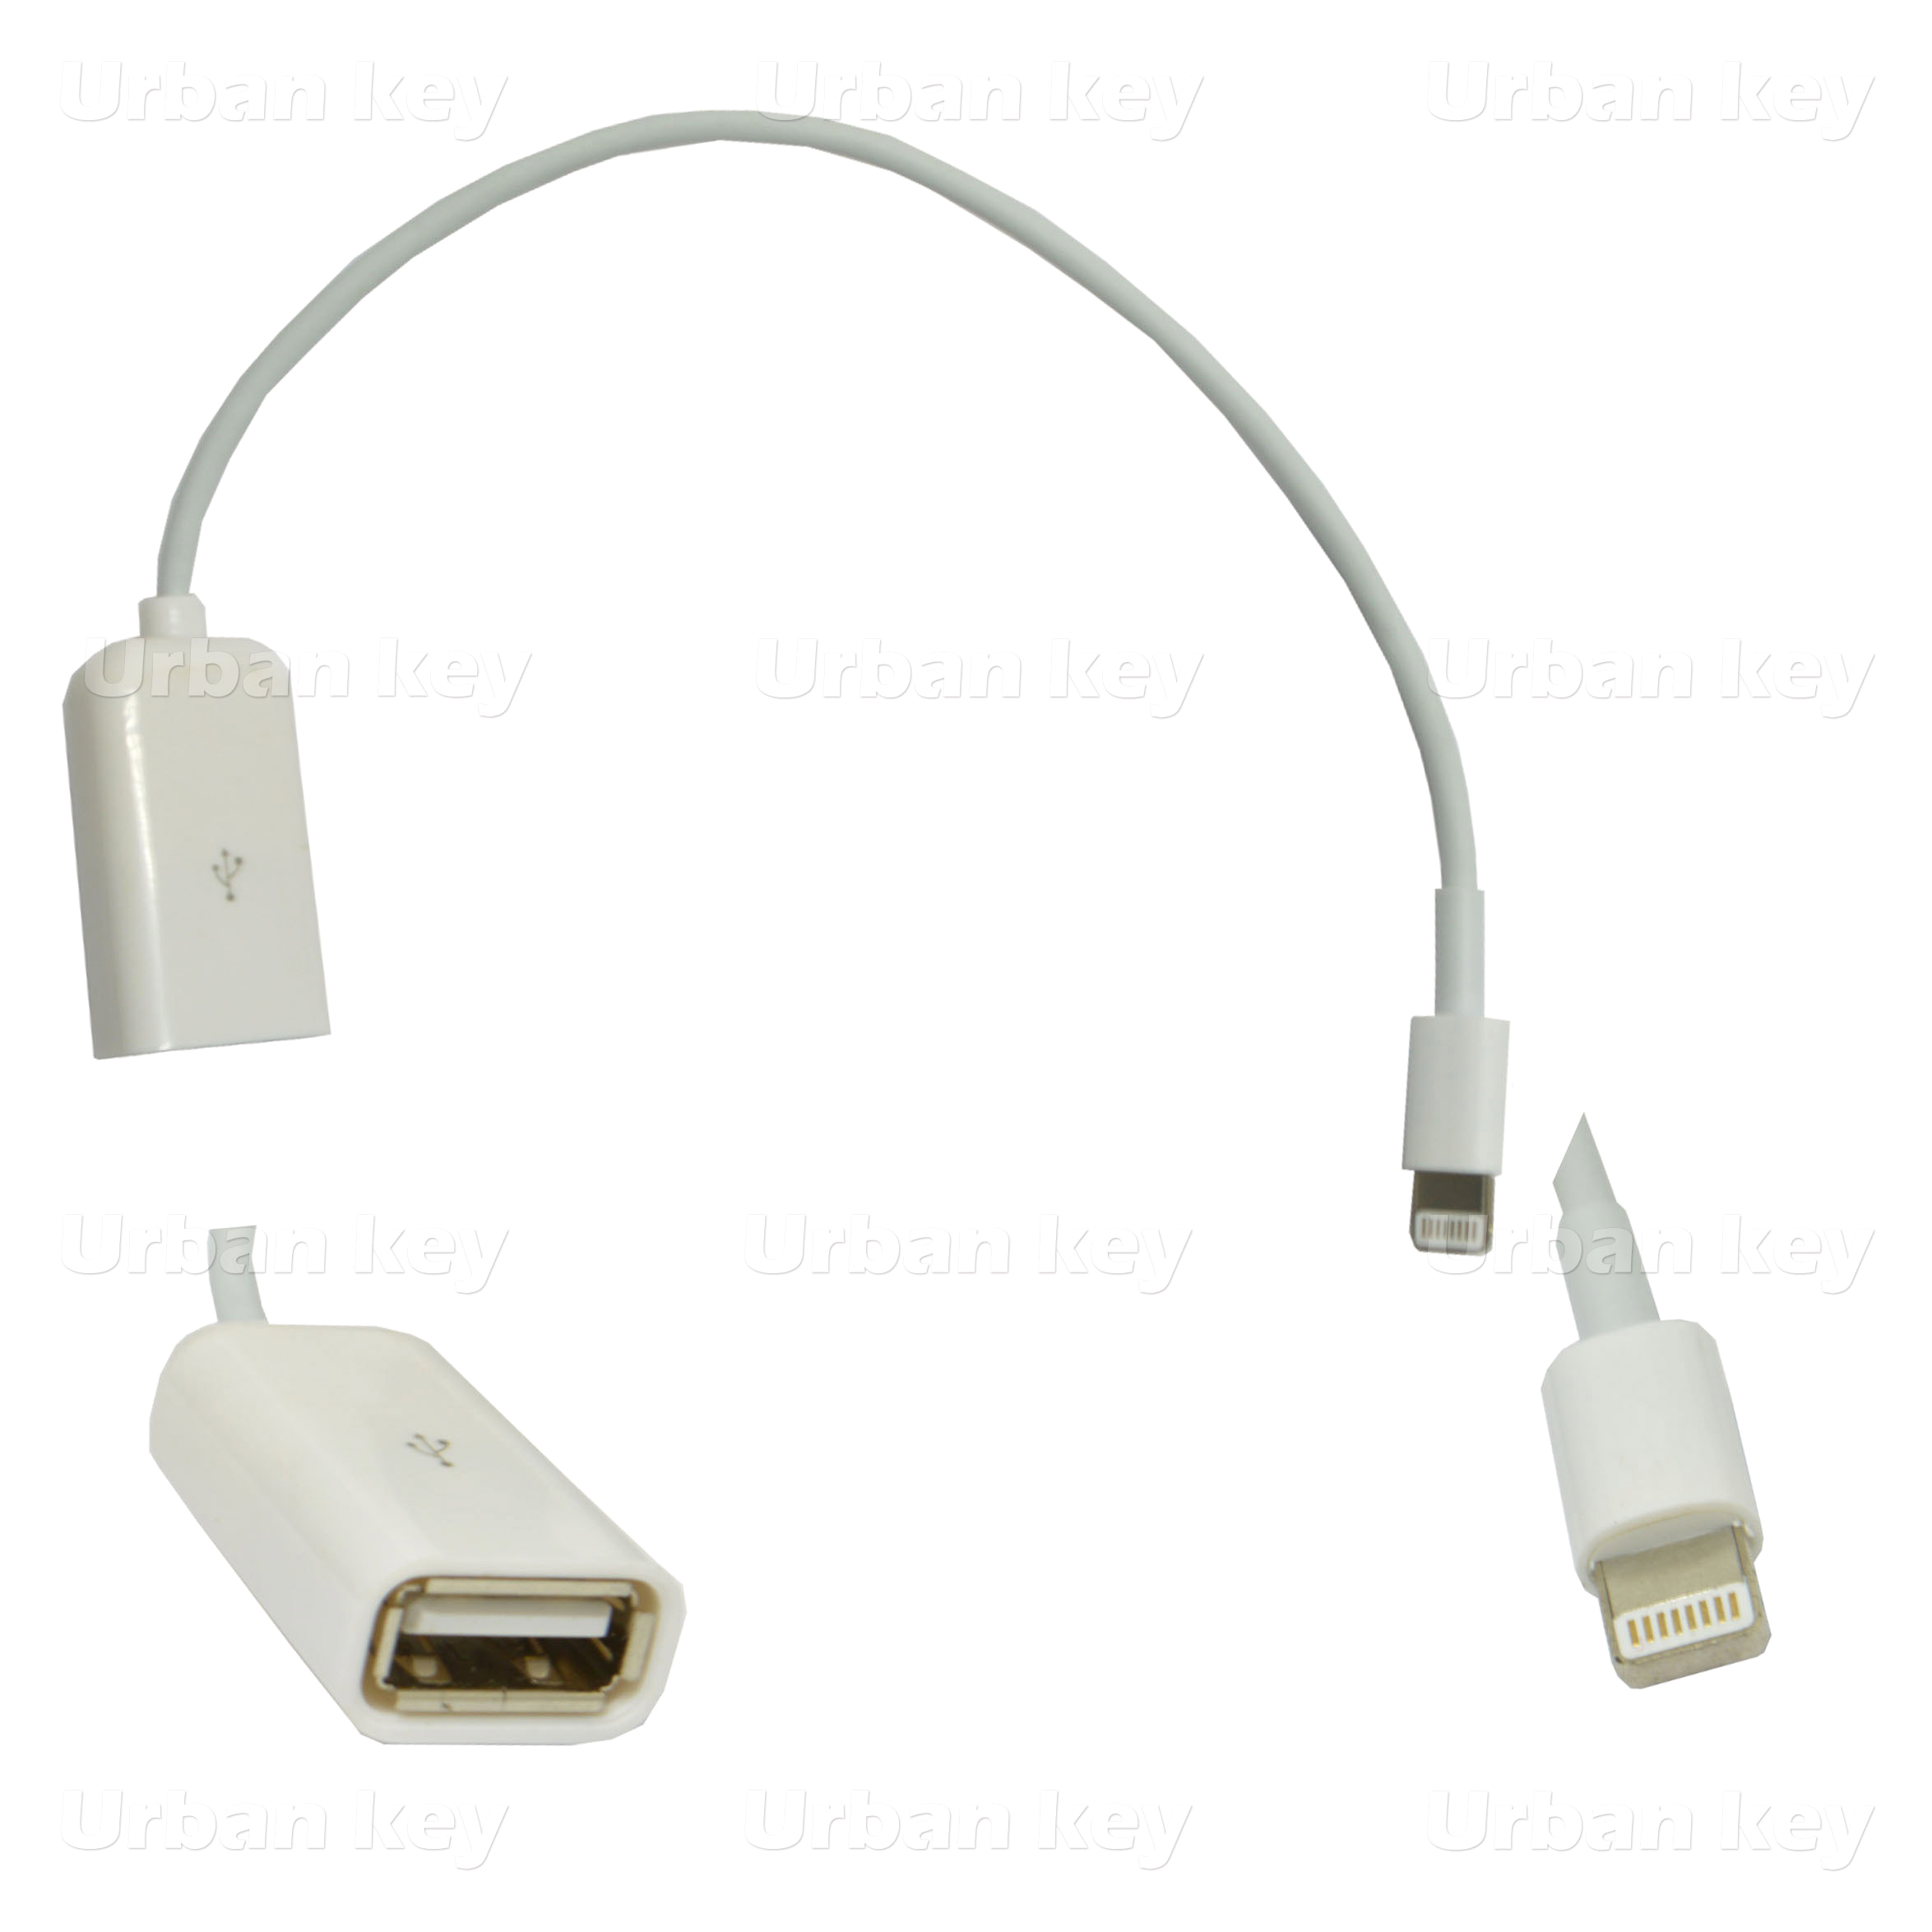 ADAPTADOR OTG  USB FEMEA / LIGHTNING APPLE